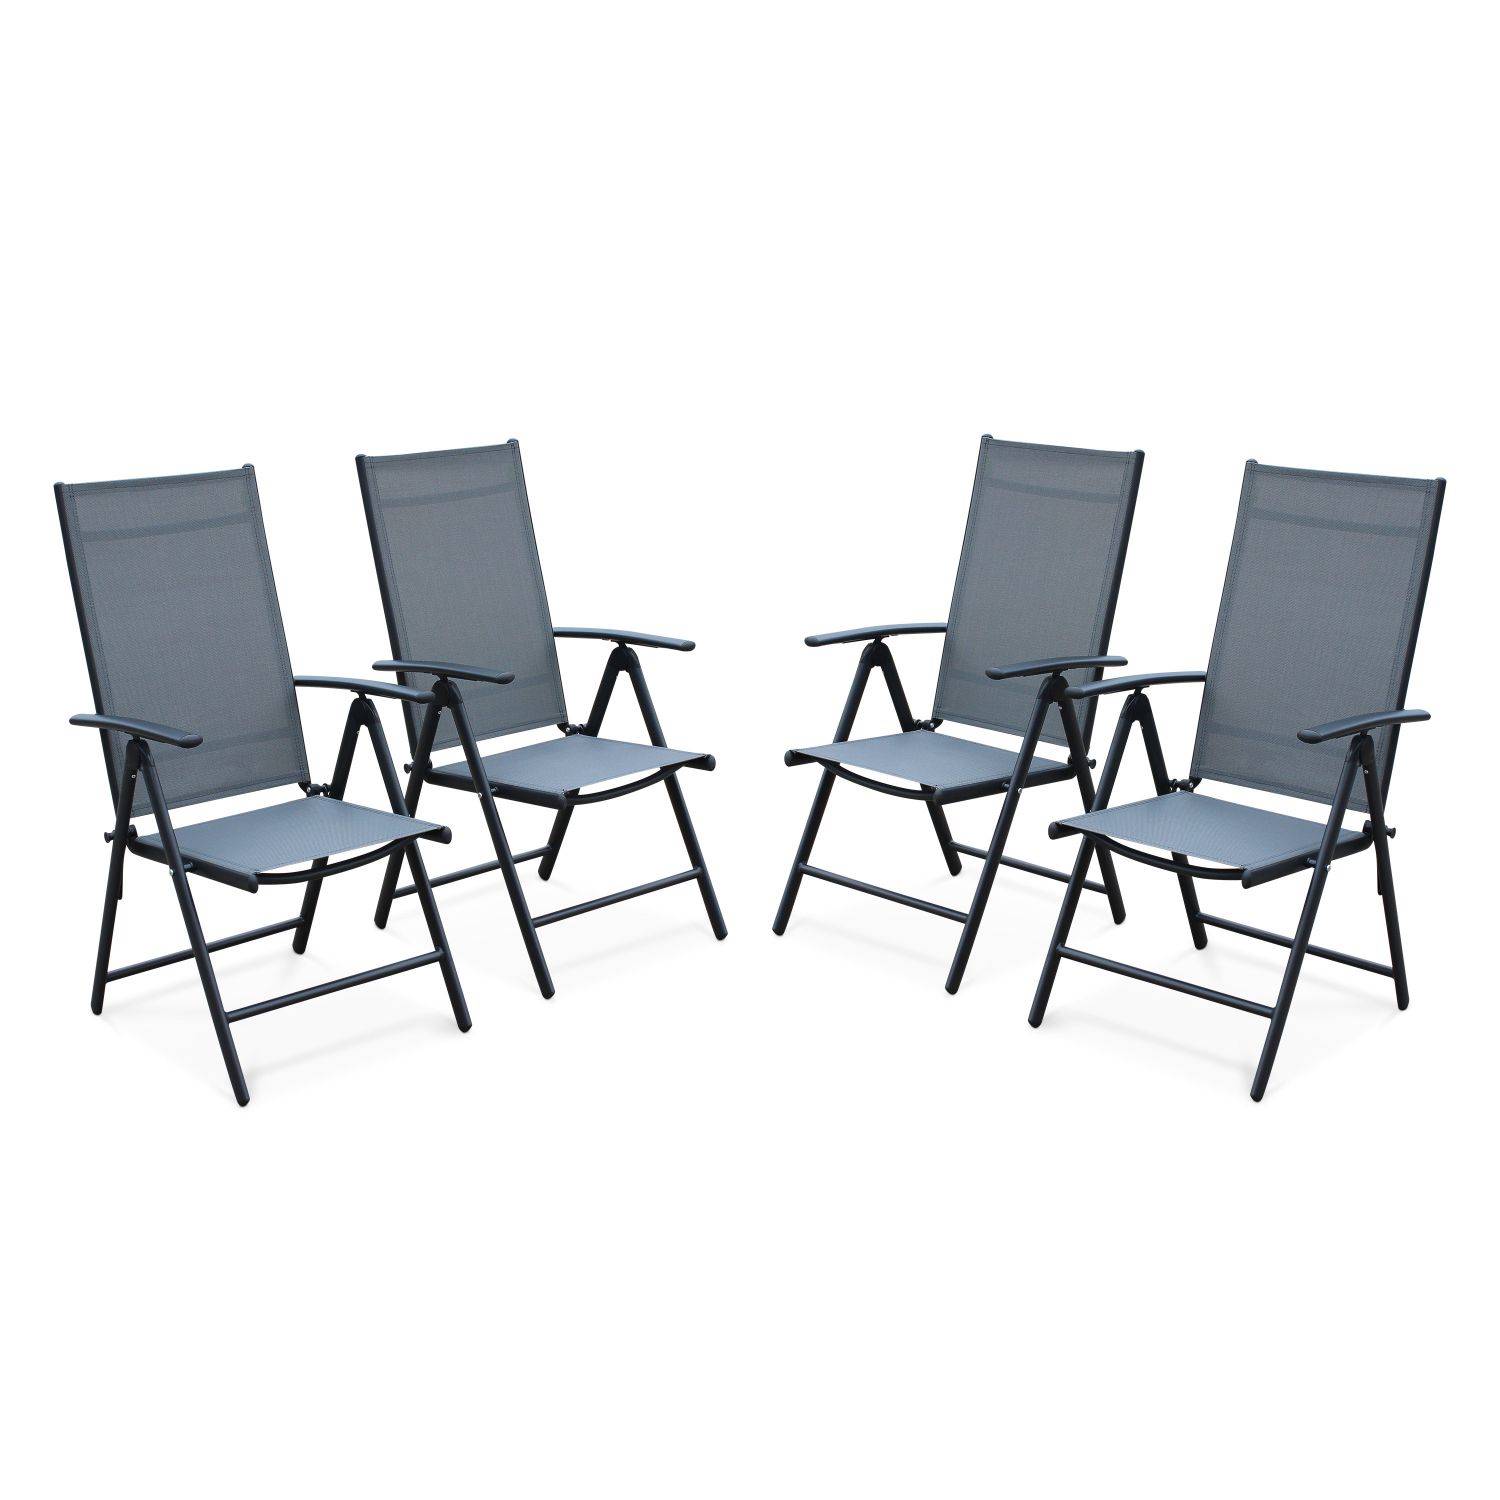 Set mit 4 Naevia-Sesseln mit mehreren Positionen aus anthrazitfarbenem Aluminium und grauemTextilene Photo1